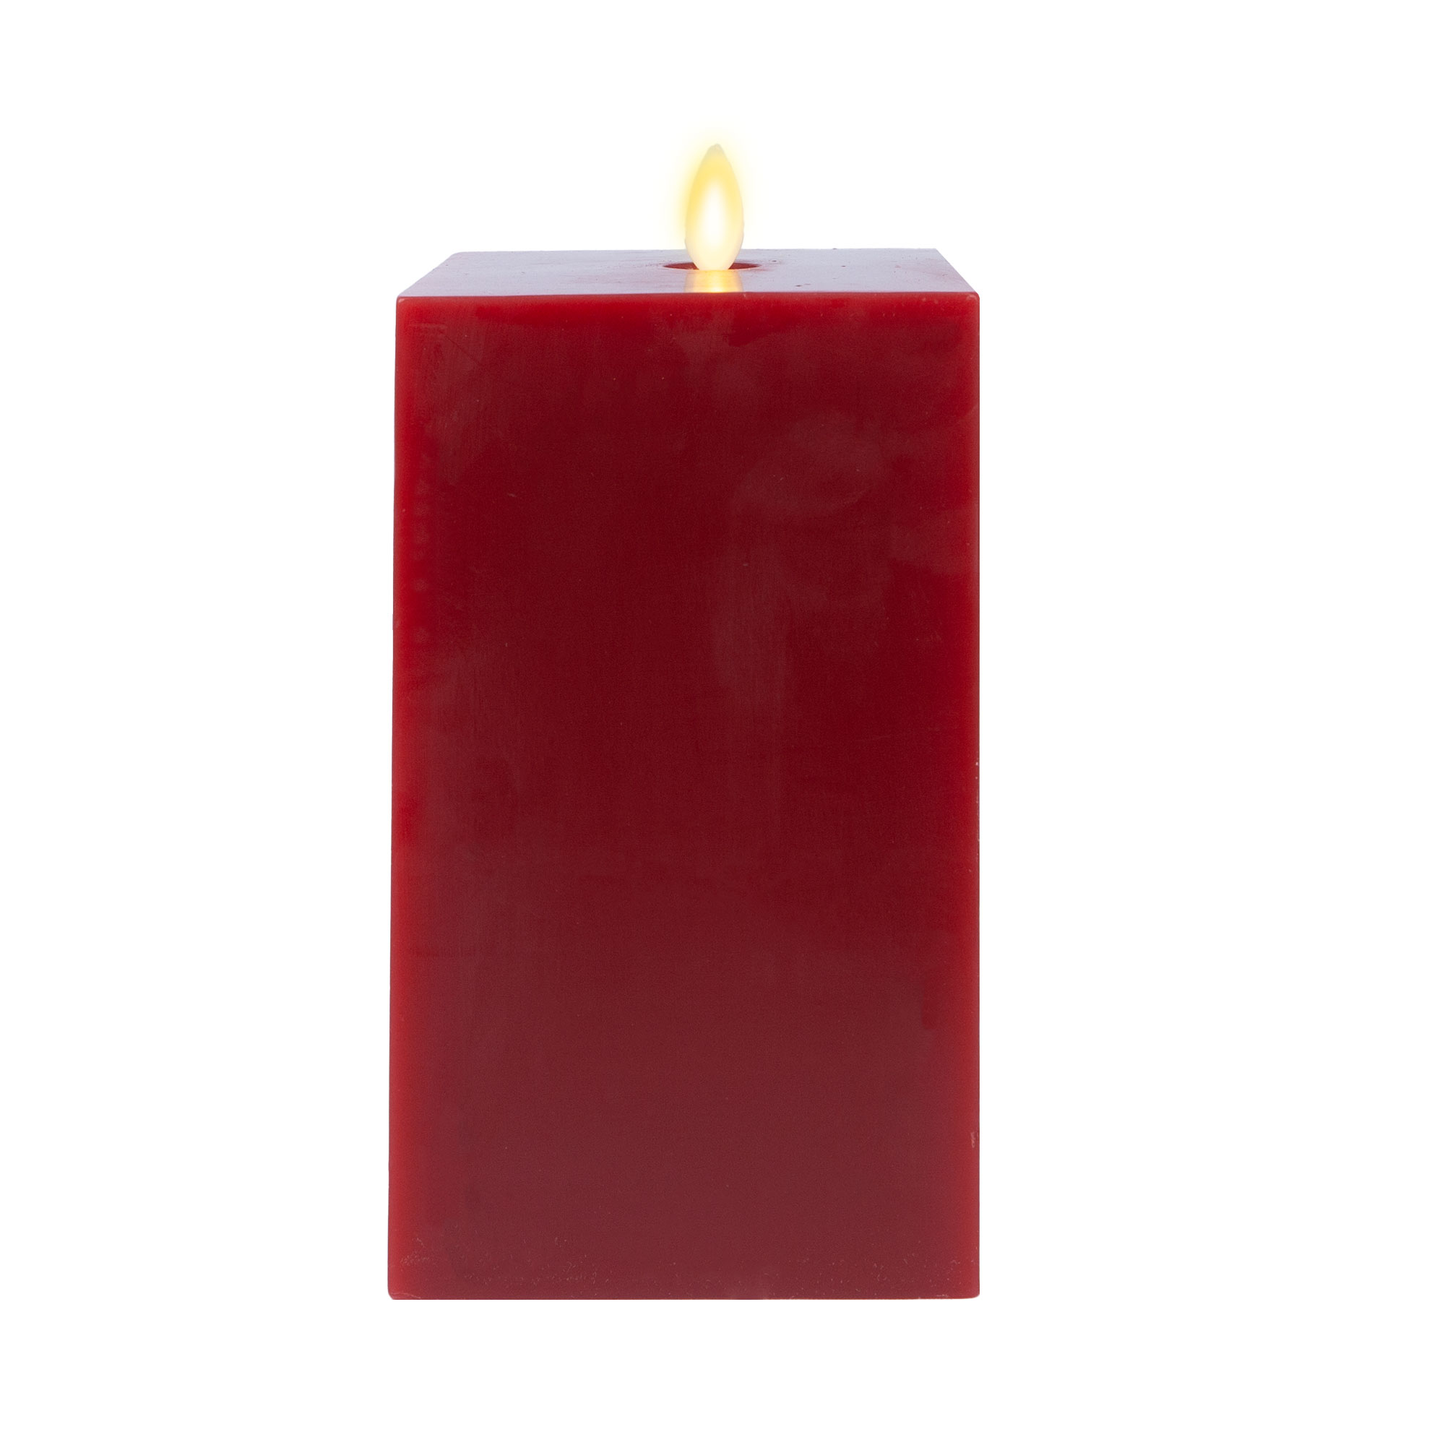 Burgundy Flameless Candle Square Pillar - Flat Top